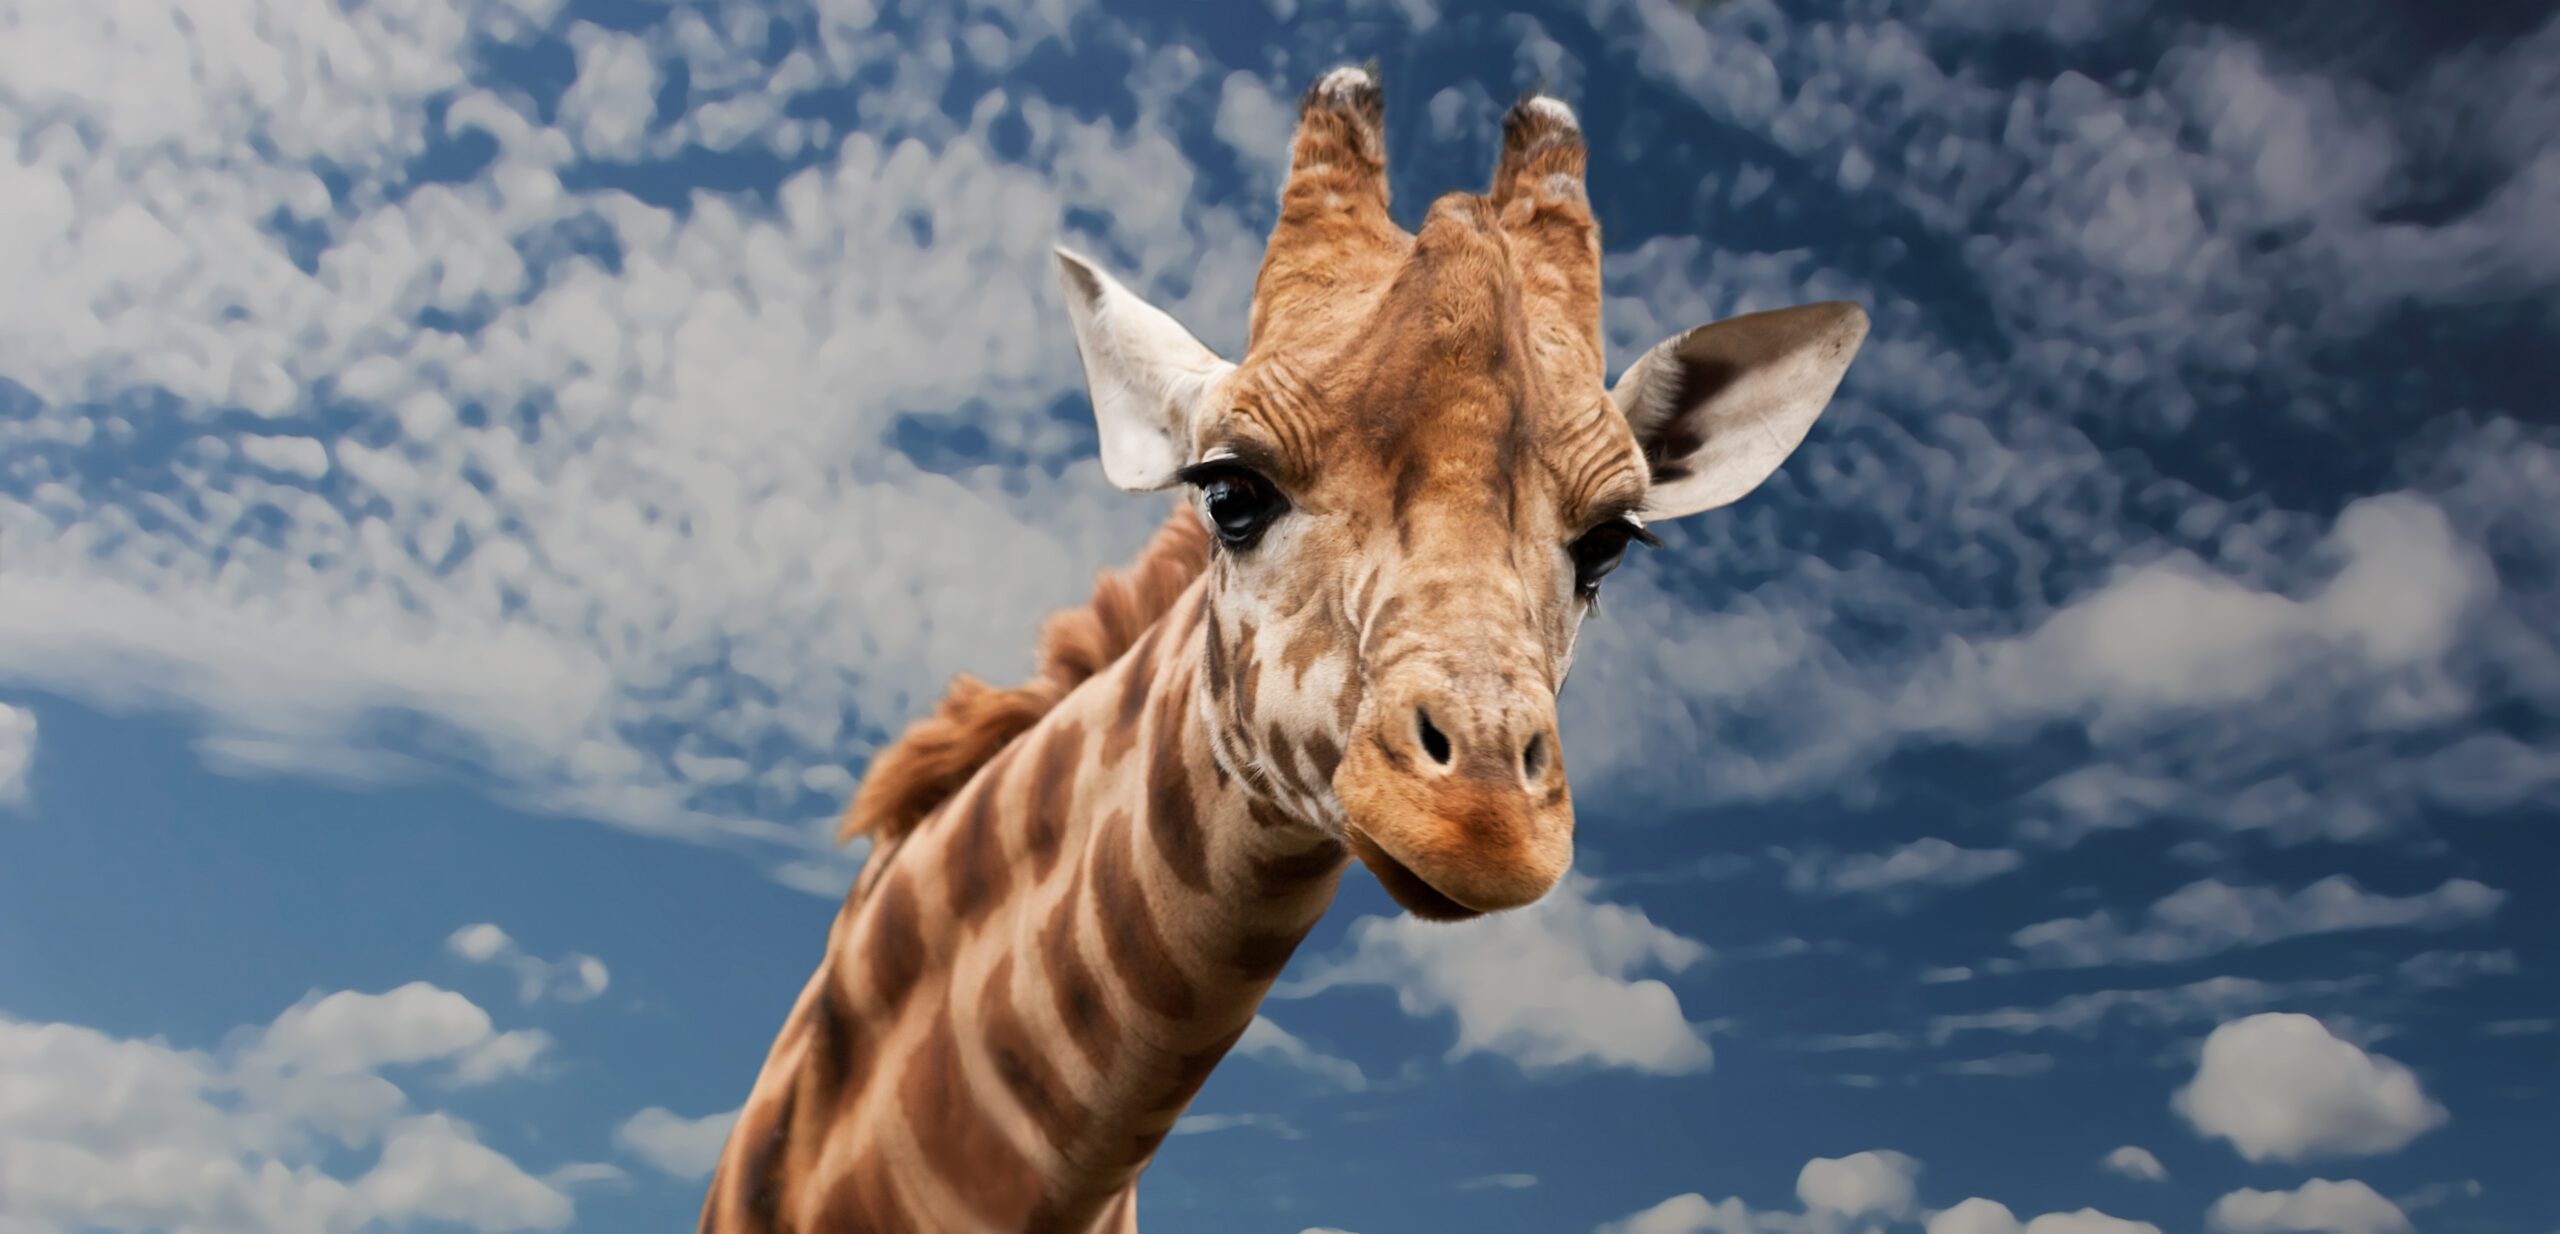 Głowa żyrafy na długiej szyi na tle niebieskiego nieba w ogrodzie zoologicznym w Płocku, który jest atrakcją dla dzieci